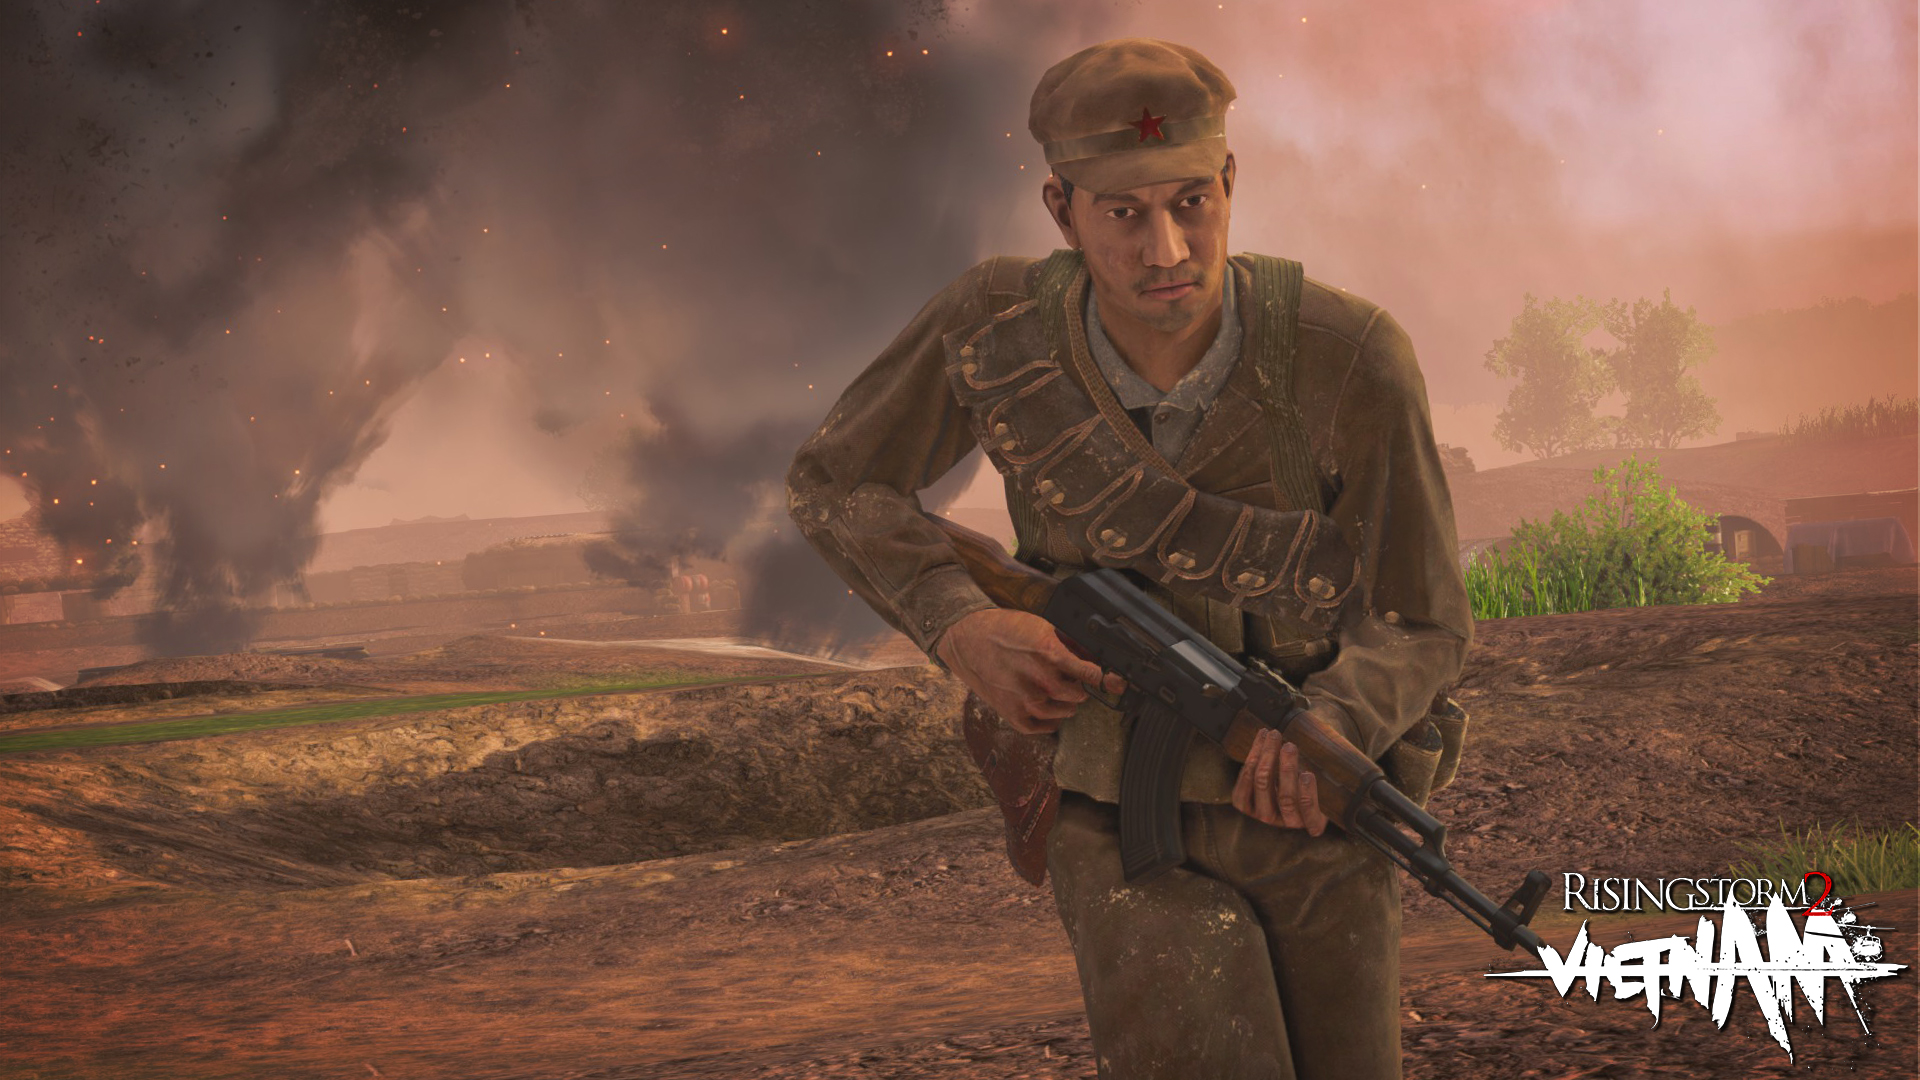 Rising Storm 2: Vietnam - Sgt Joe's Support Bundle DLC Featured Screenshot #1